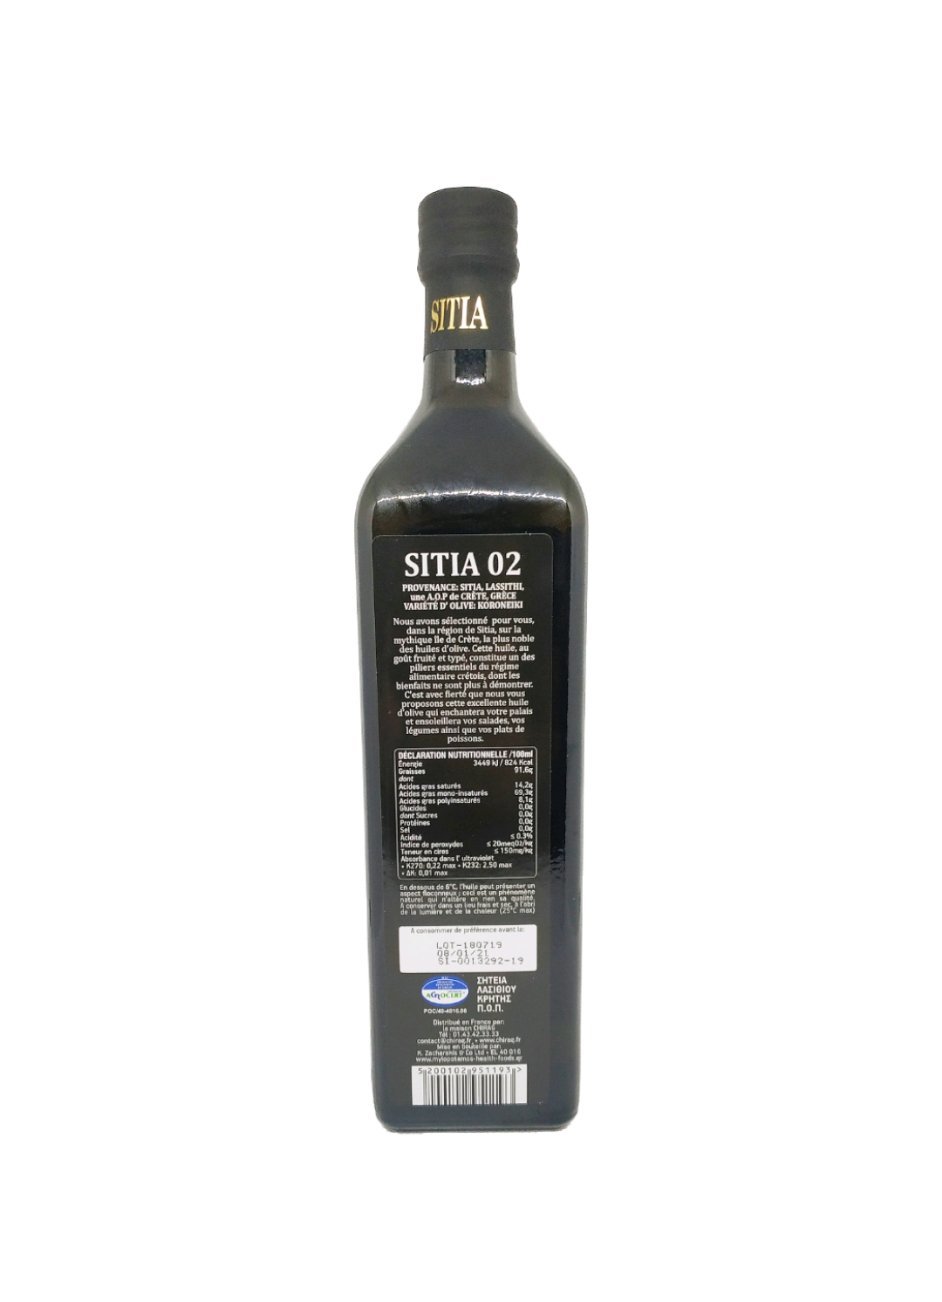 Produits orientaux en ligne: Sitia - Huile d'olive extra vierge 0.2 Qualité supérieure